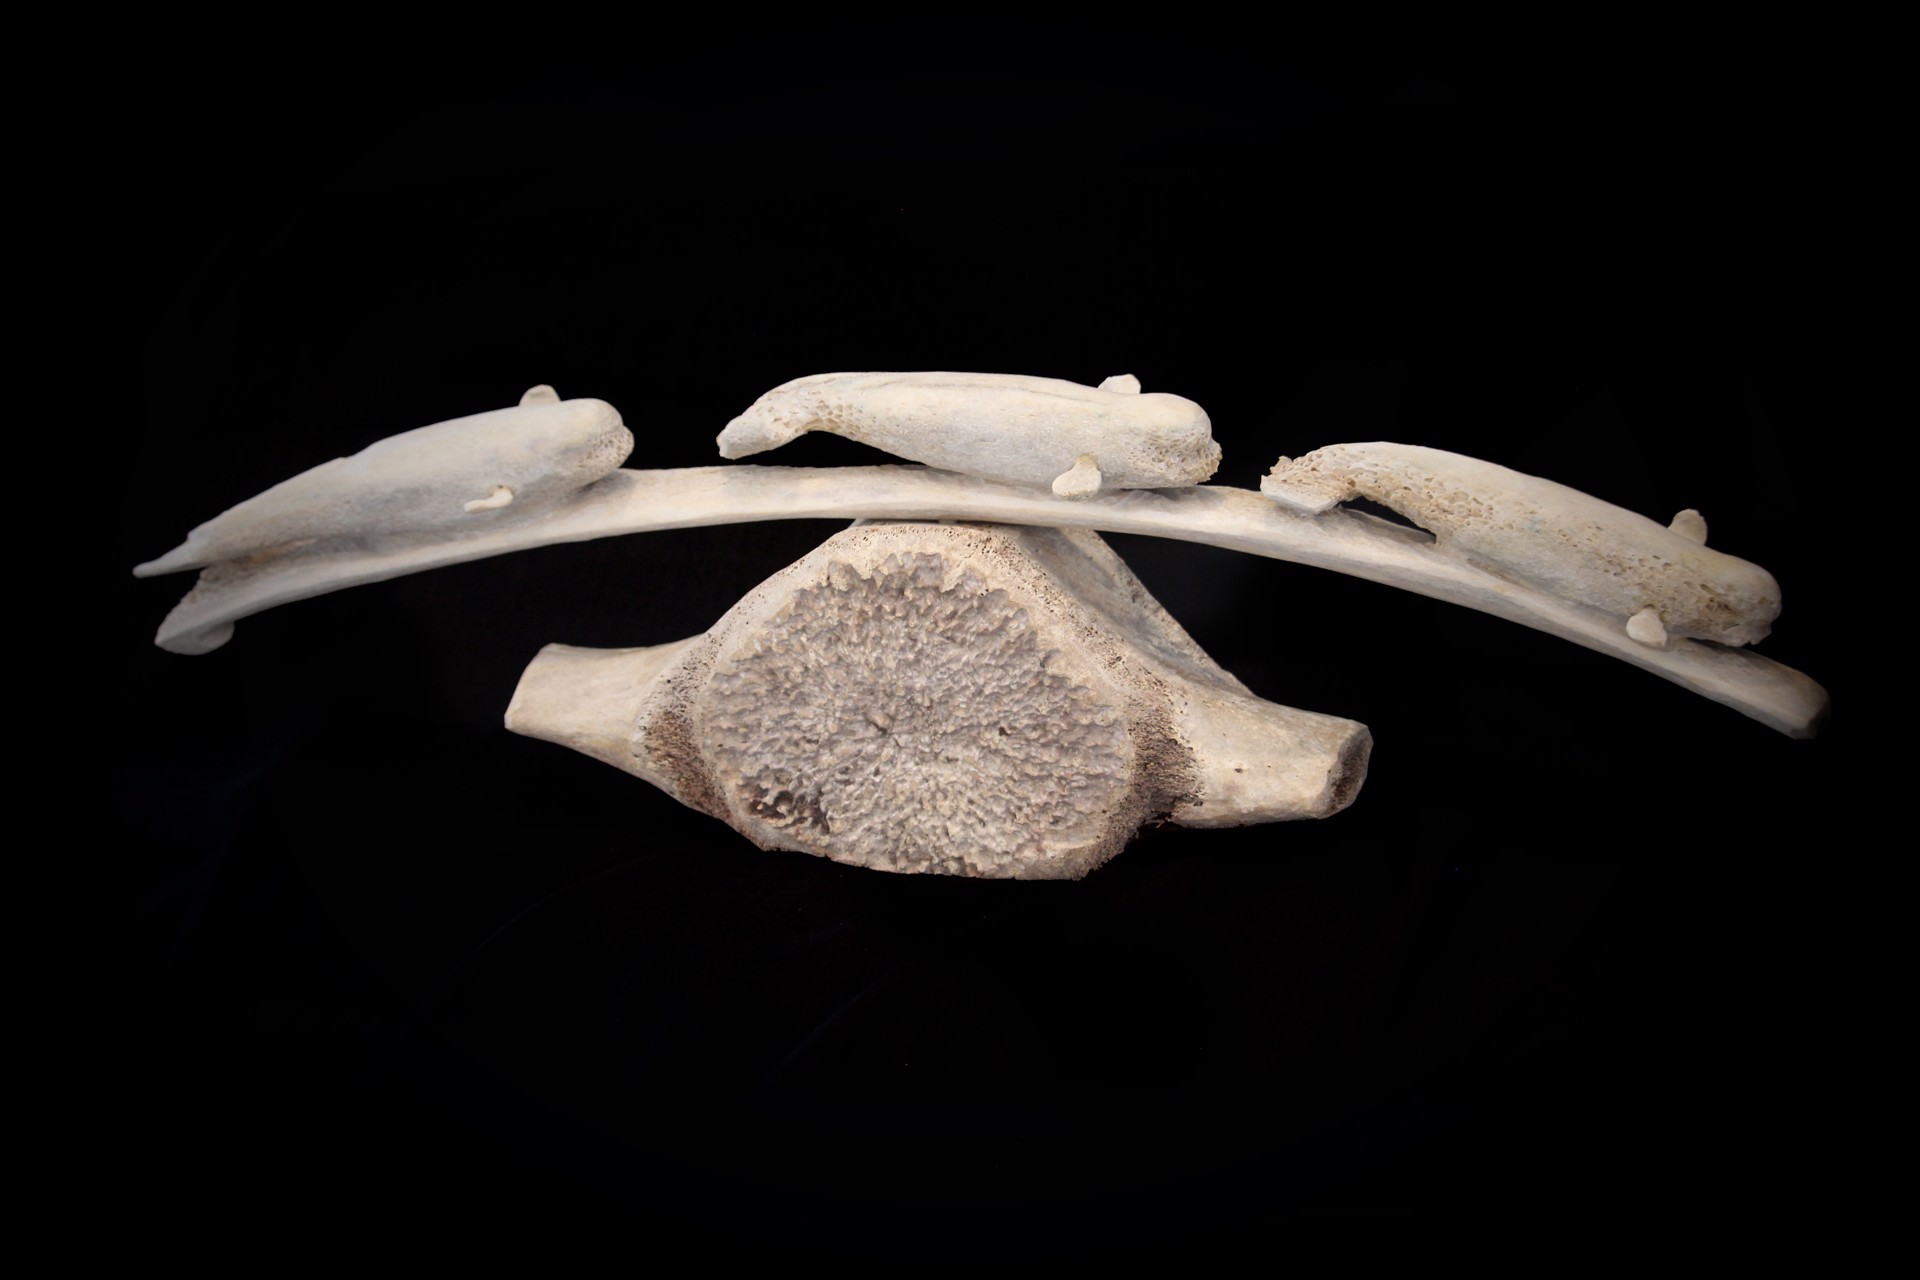 Three Whale Bone Sculpture by Bart Hanna